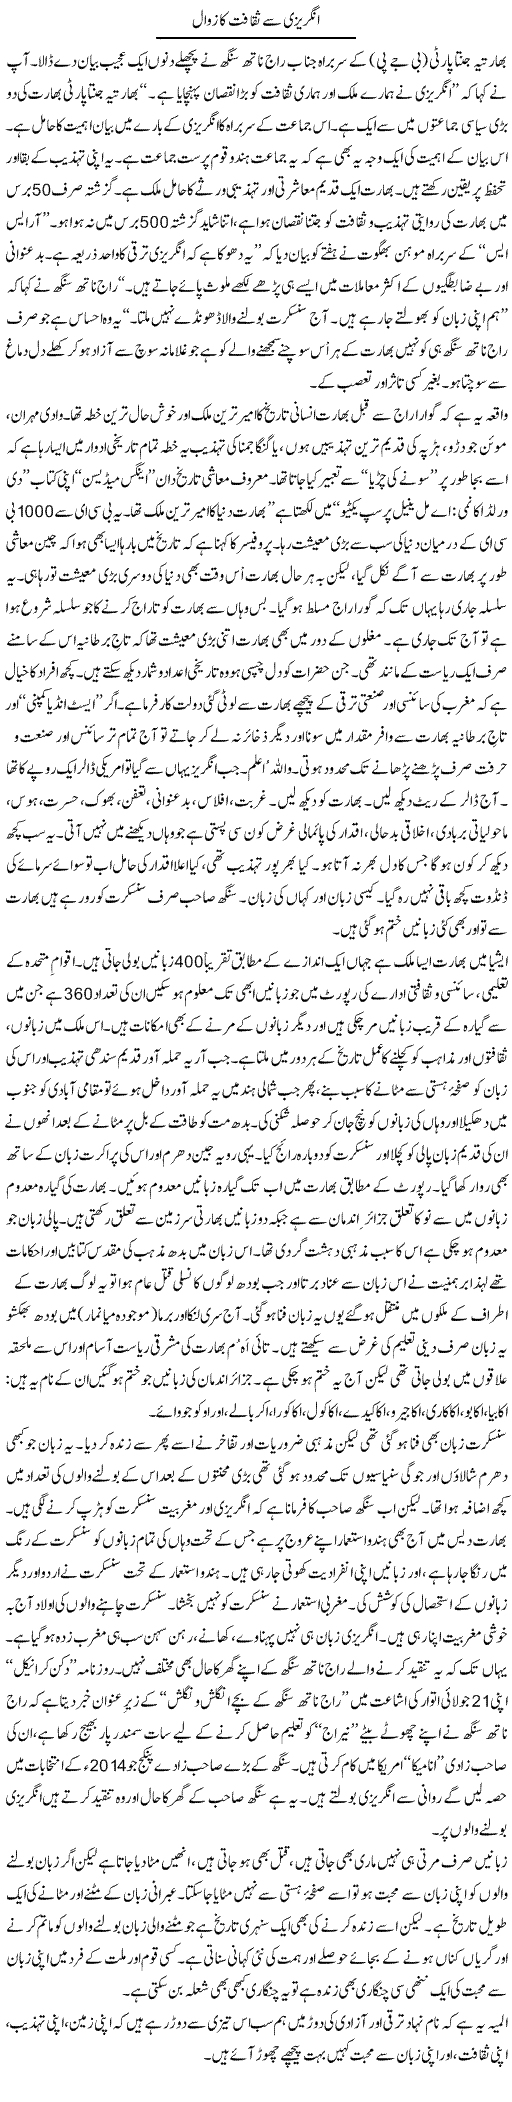 Angrezi Saqafat Ka Zawal | Shaikh Jaber | Daily Urdu Columns